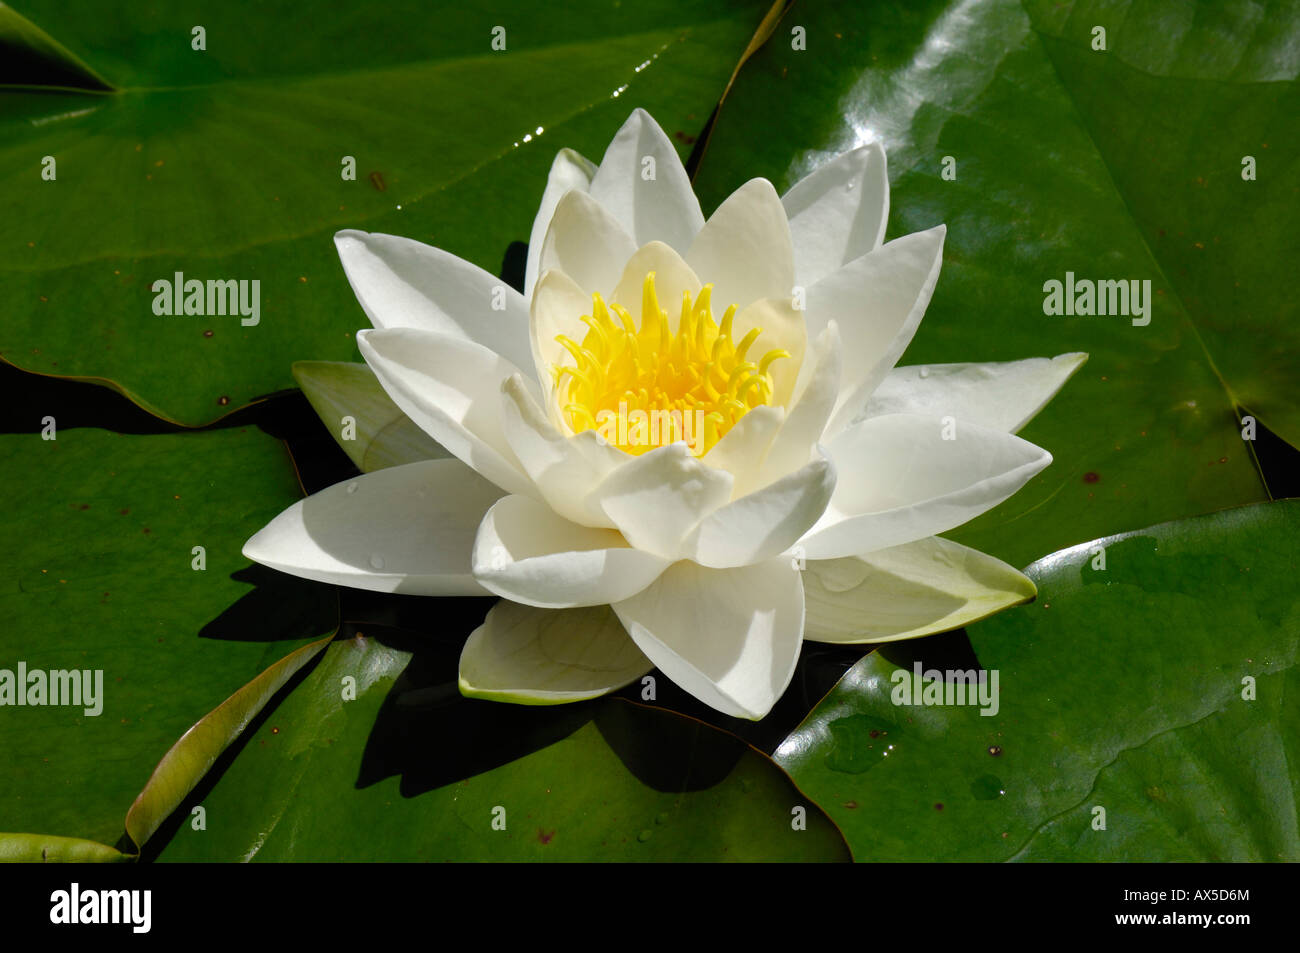 European White Waterlily or White Lotus (Nymphaea alba) Stock Photo